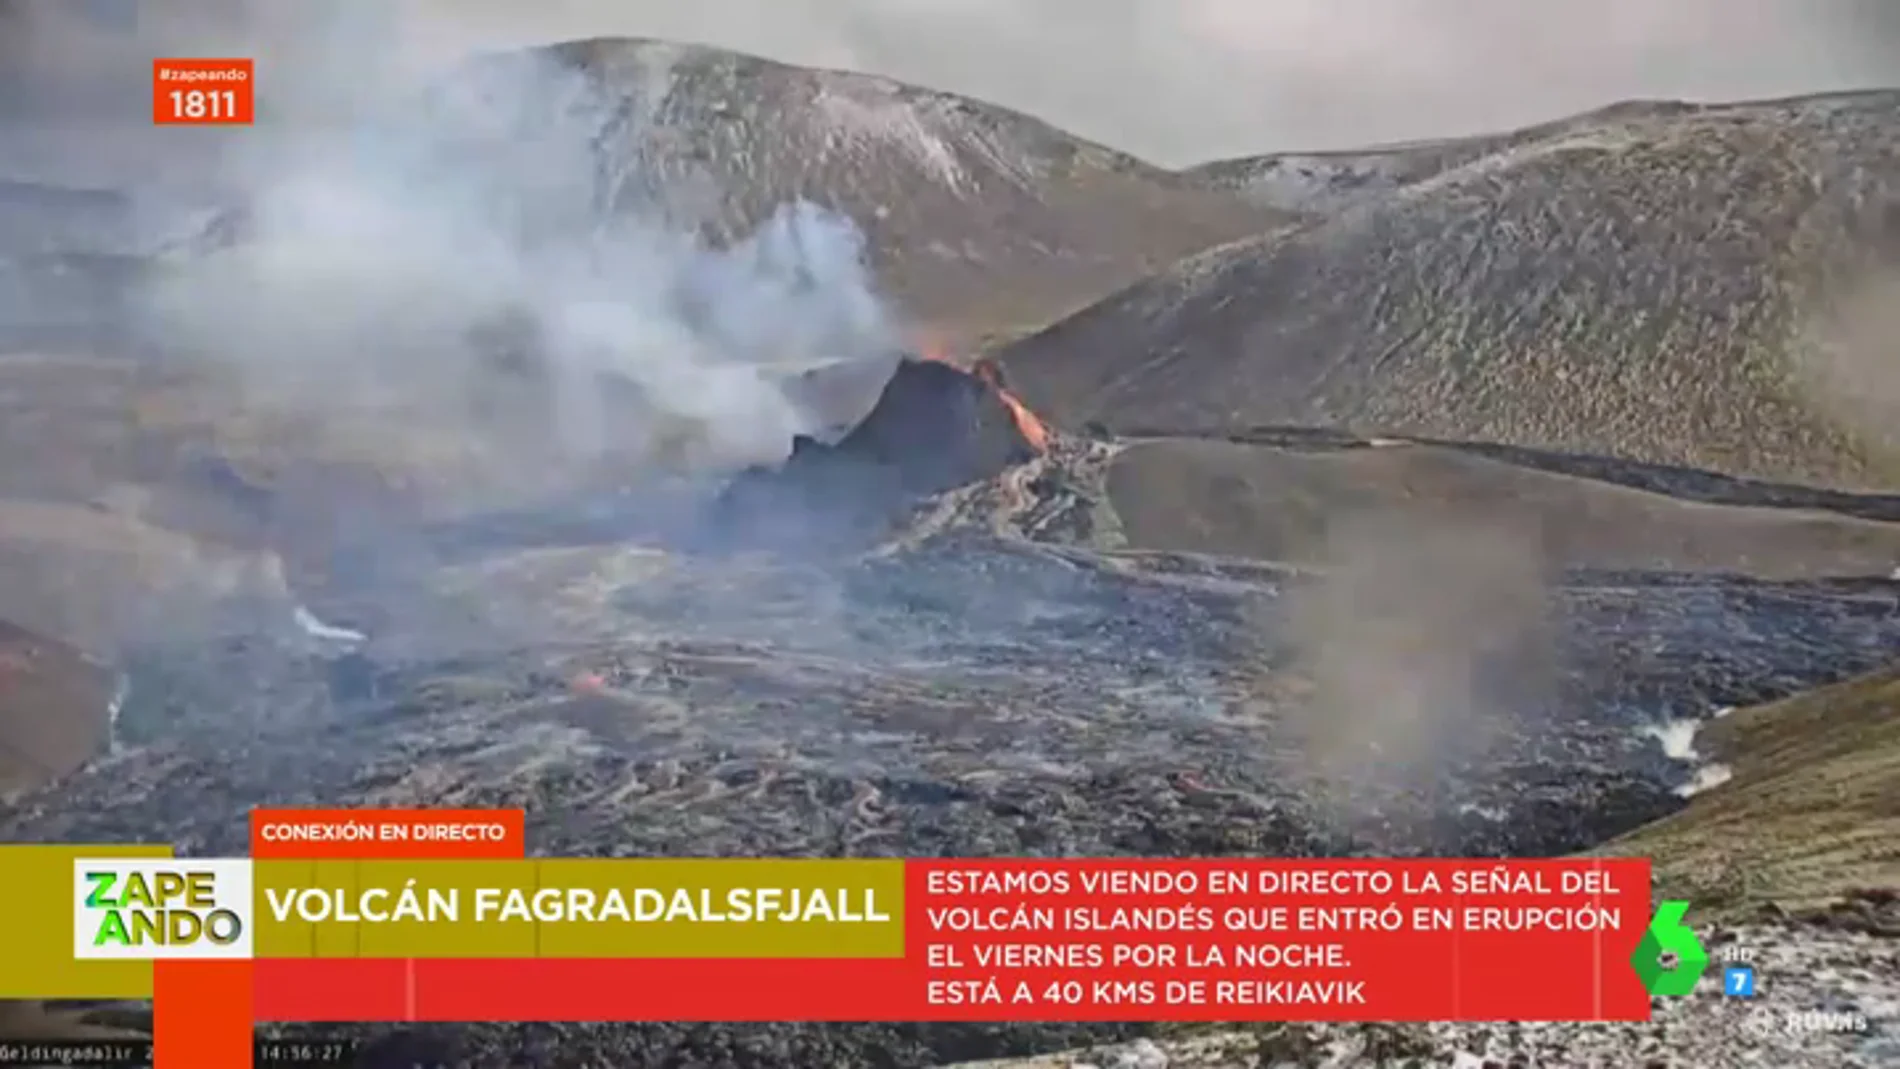 La señal en directo de un volcán islandés expulsando lava tras 6.000 años inactivo